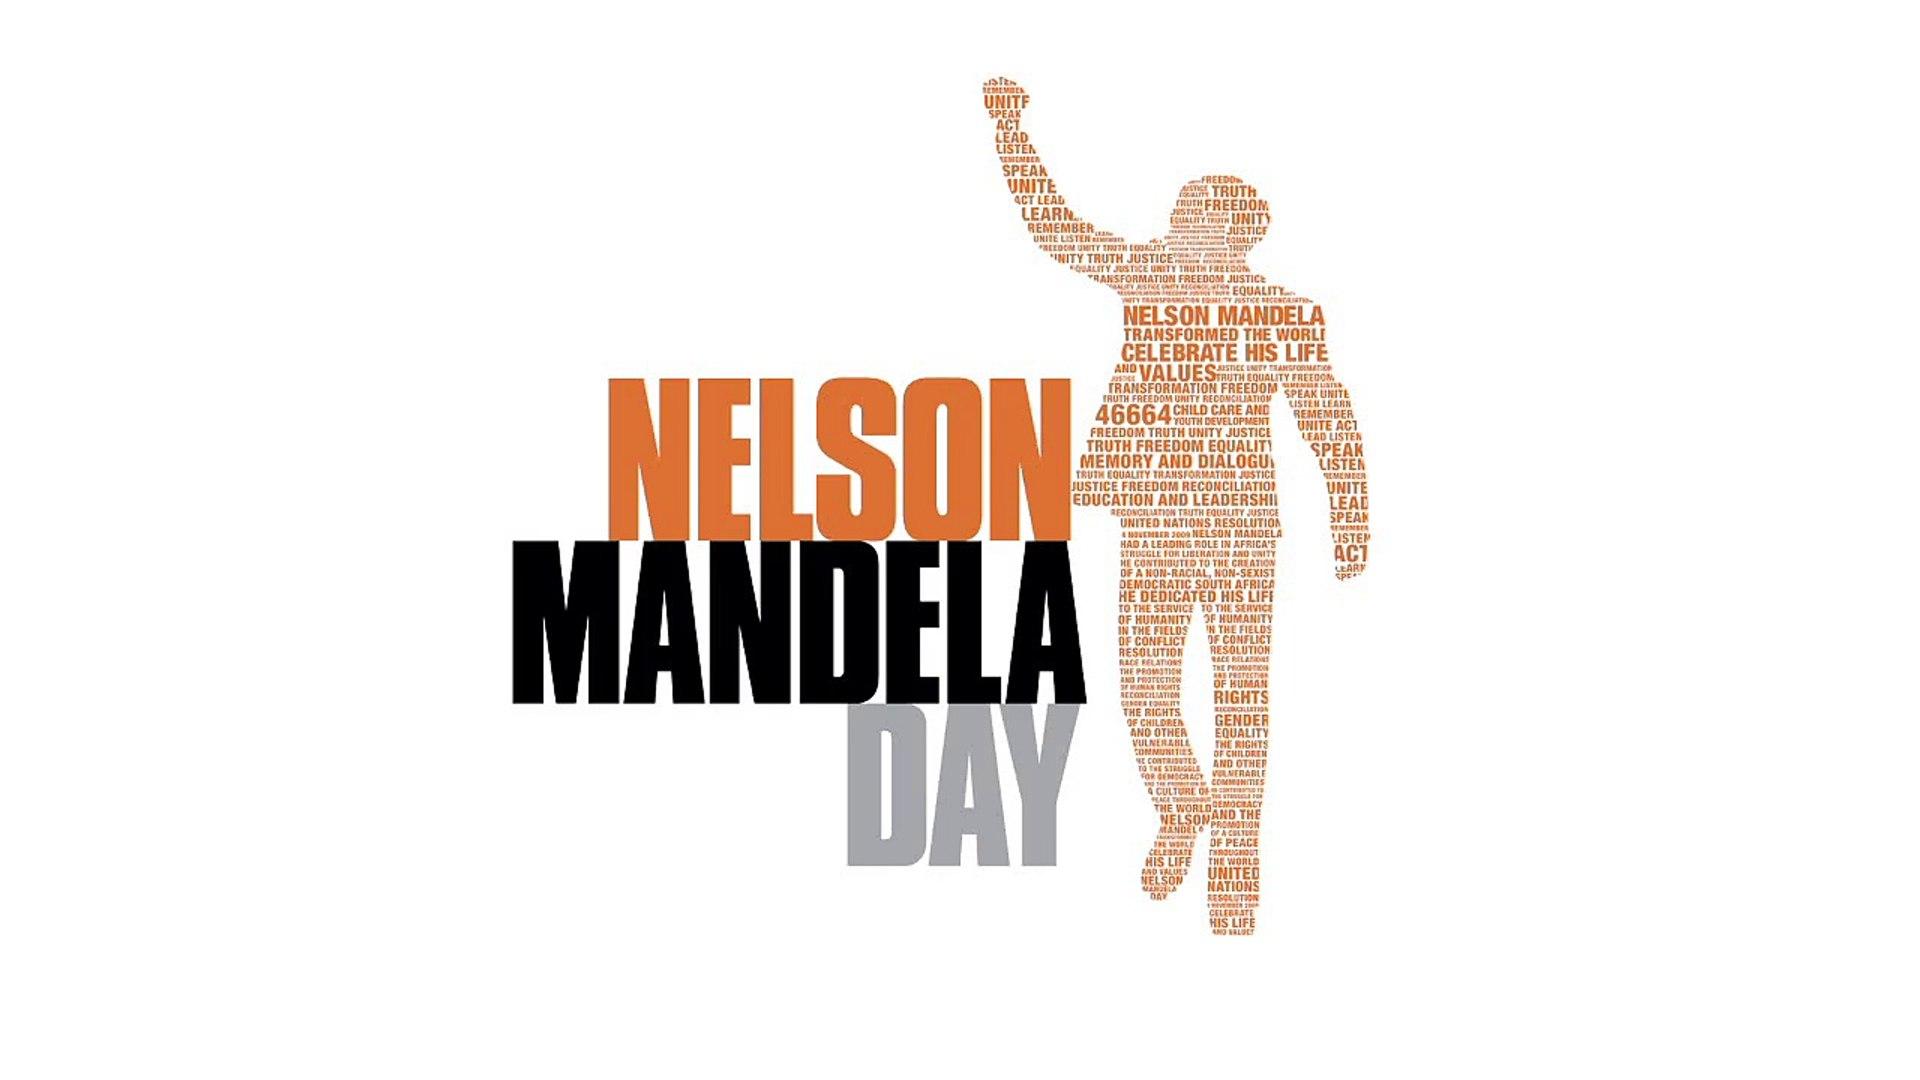 Gro Harlem Brundtland in a message of support for Mandela Day